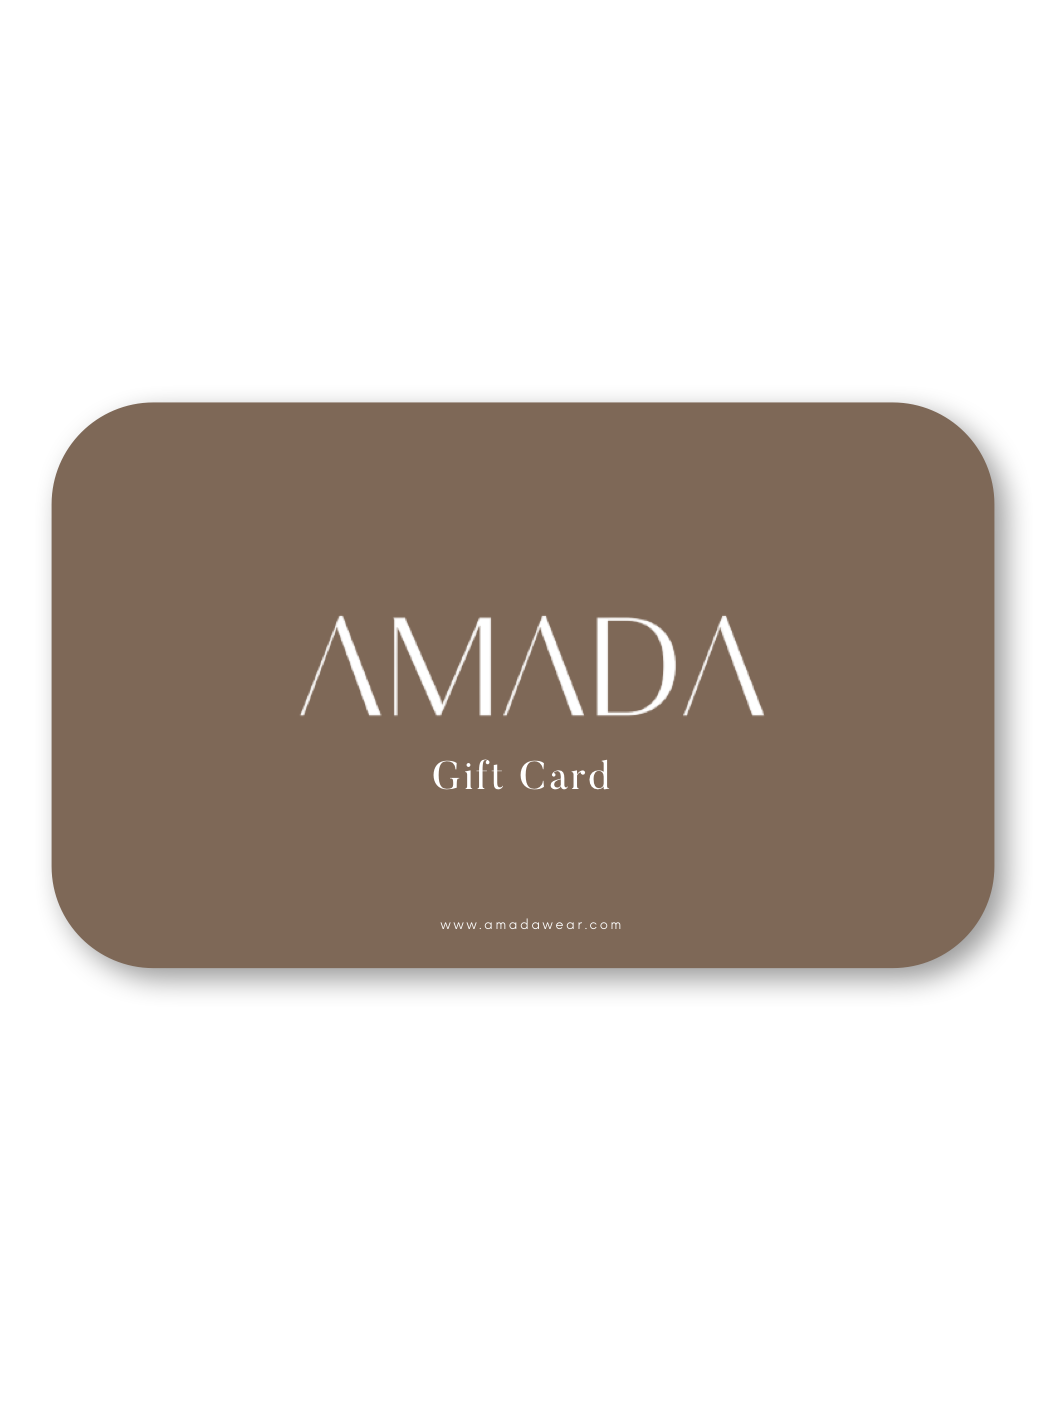 AMADA Giftcard